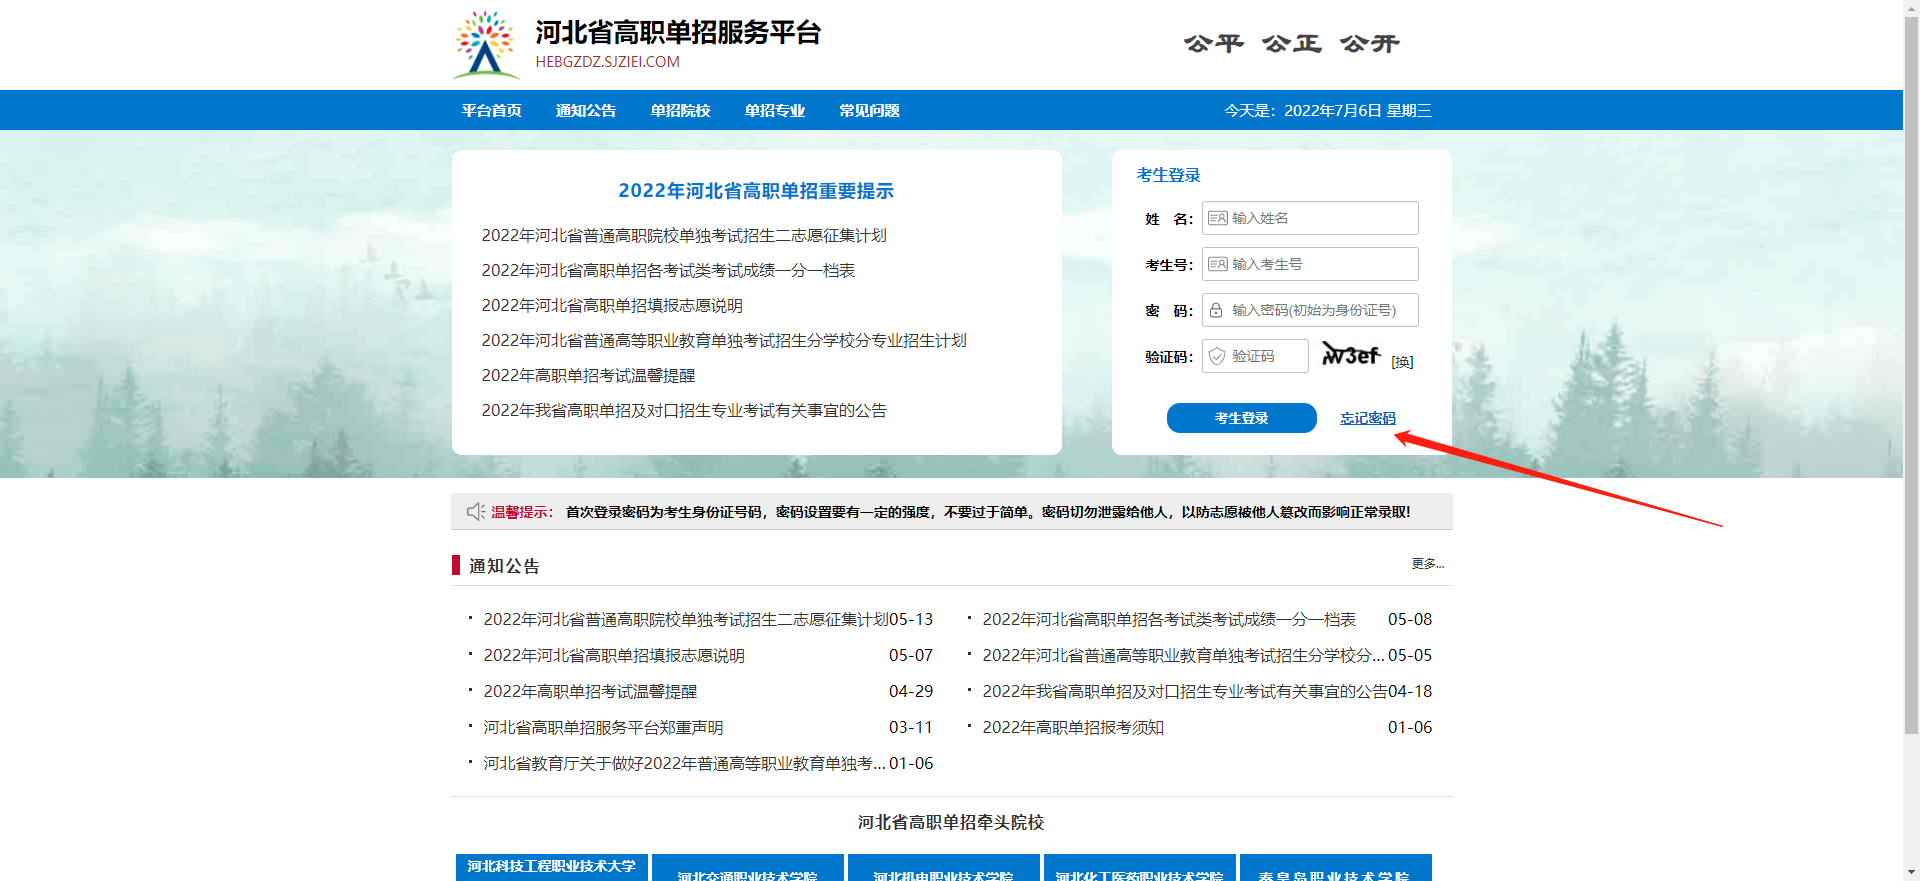 河北省高职单招服务平台忘记登录密码的处理办法